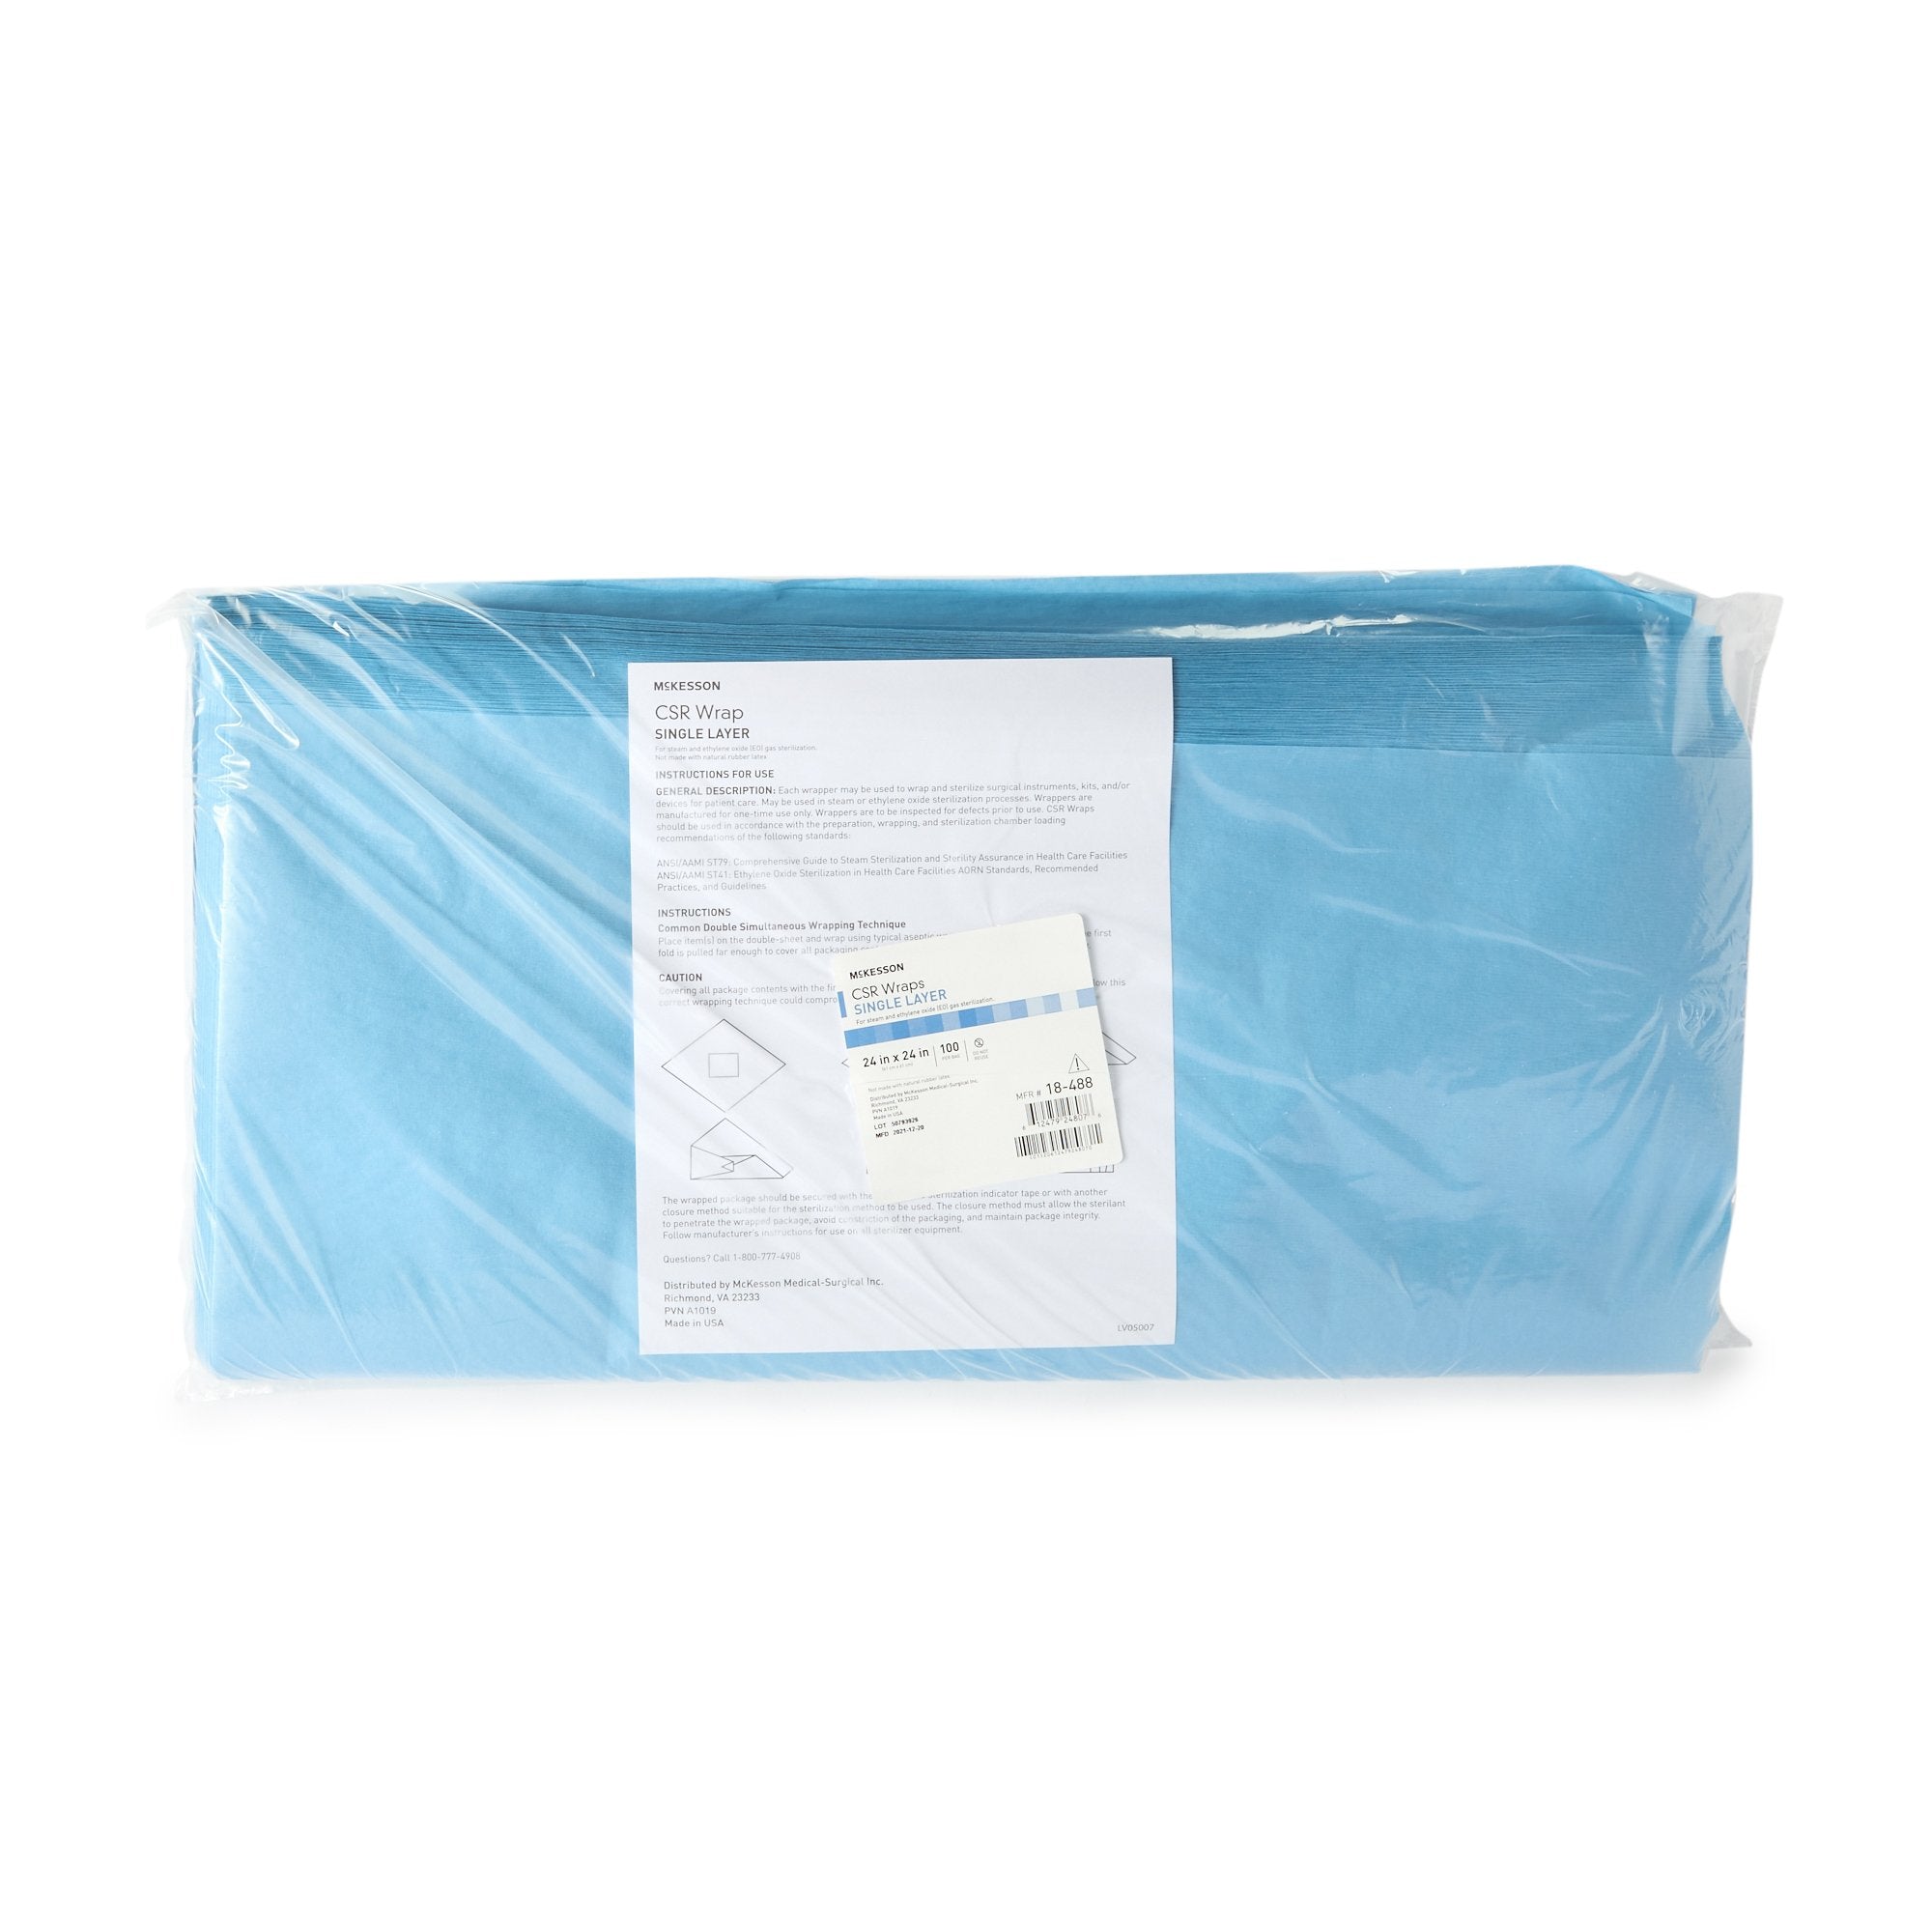 McKesson Sterilization Wrap Blue 24 X 24 Inch Single Layer Cellulose Steam / EO Gas